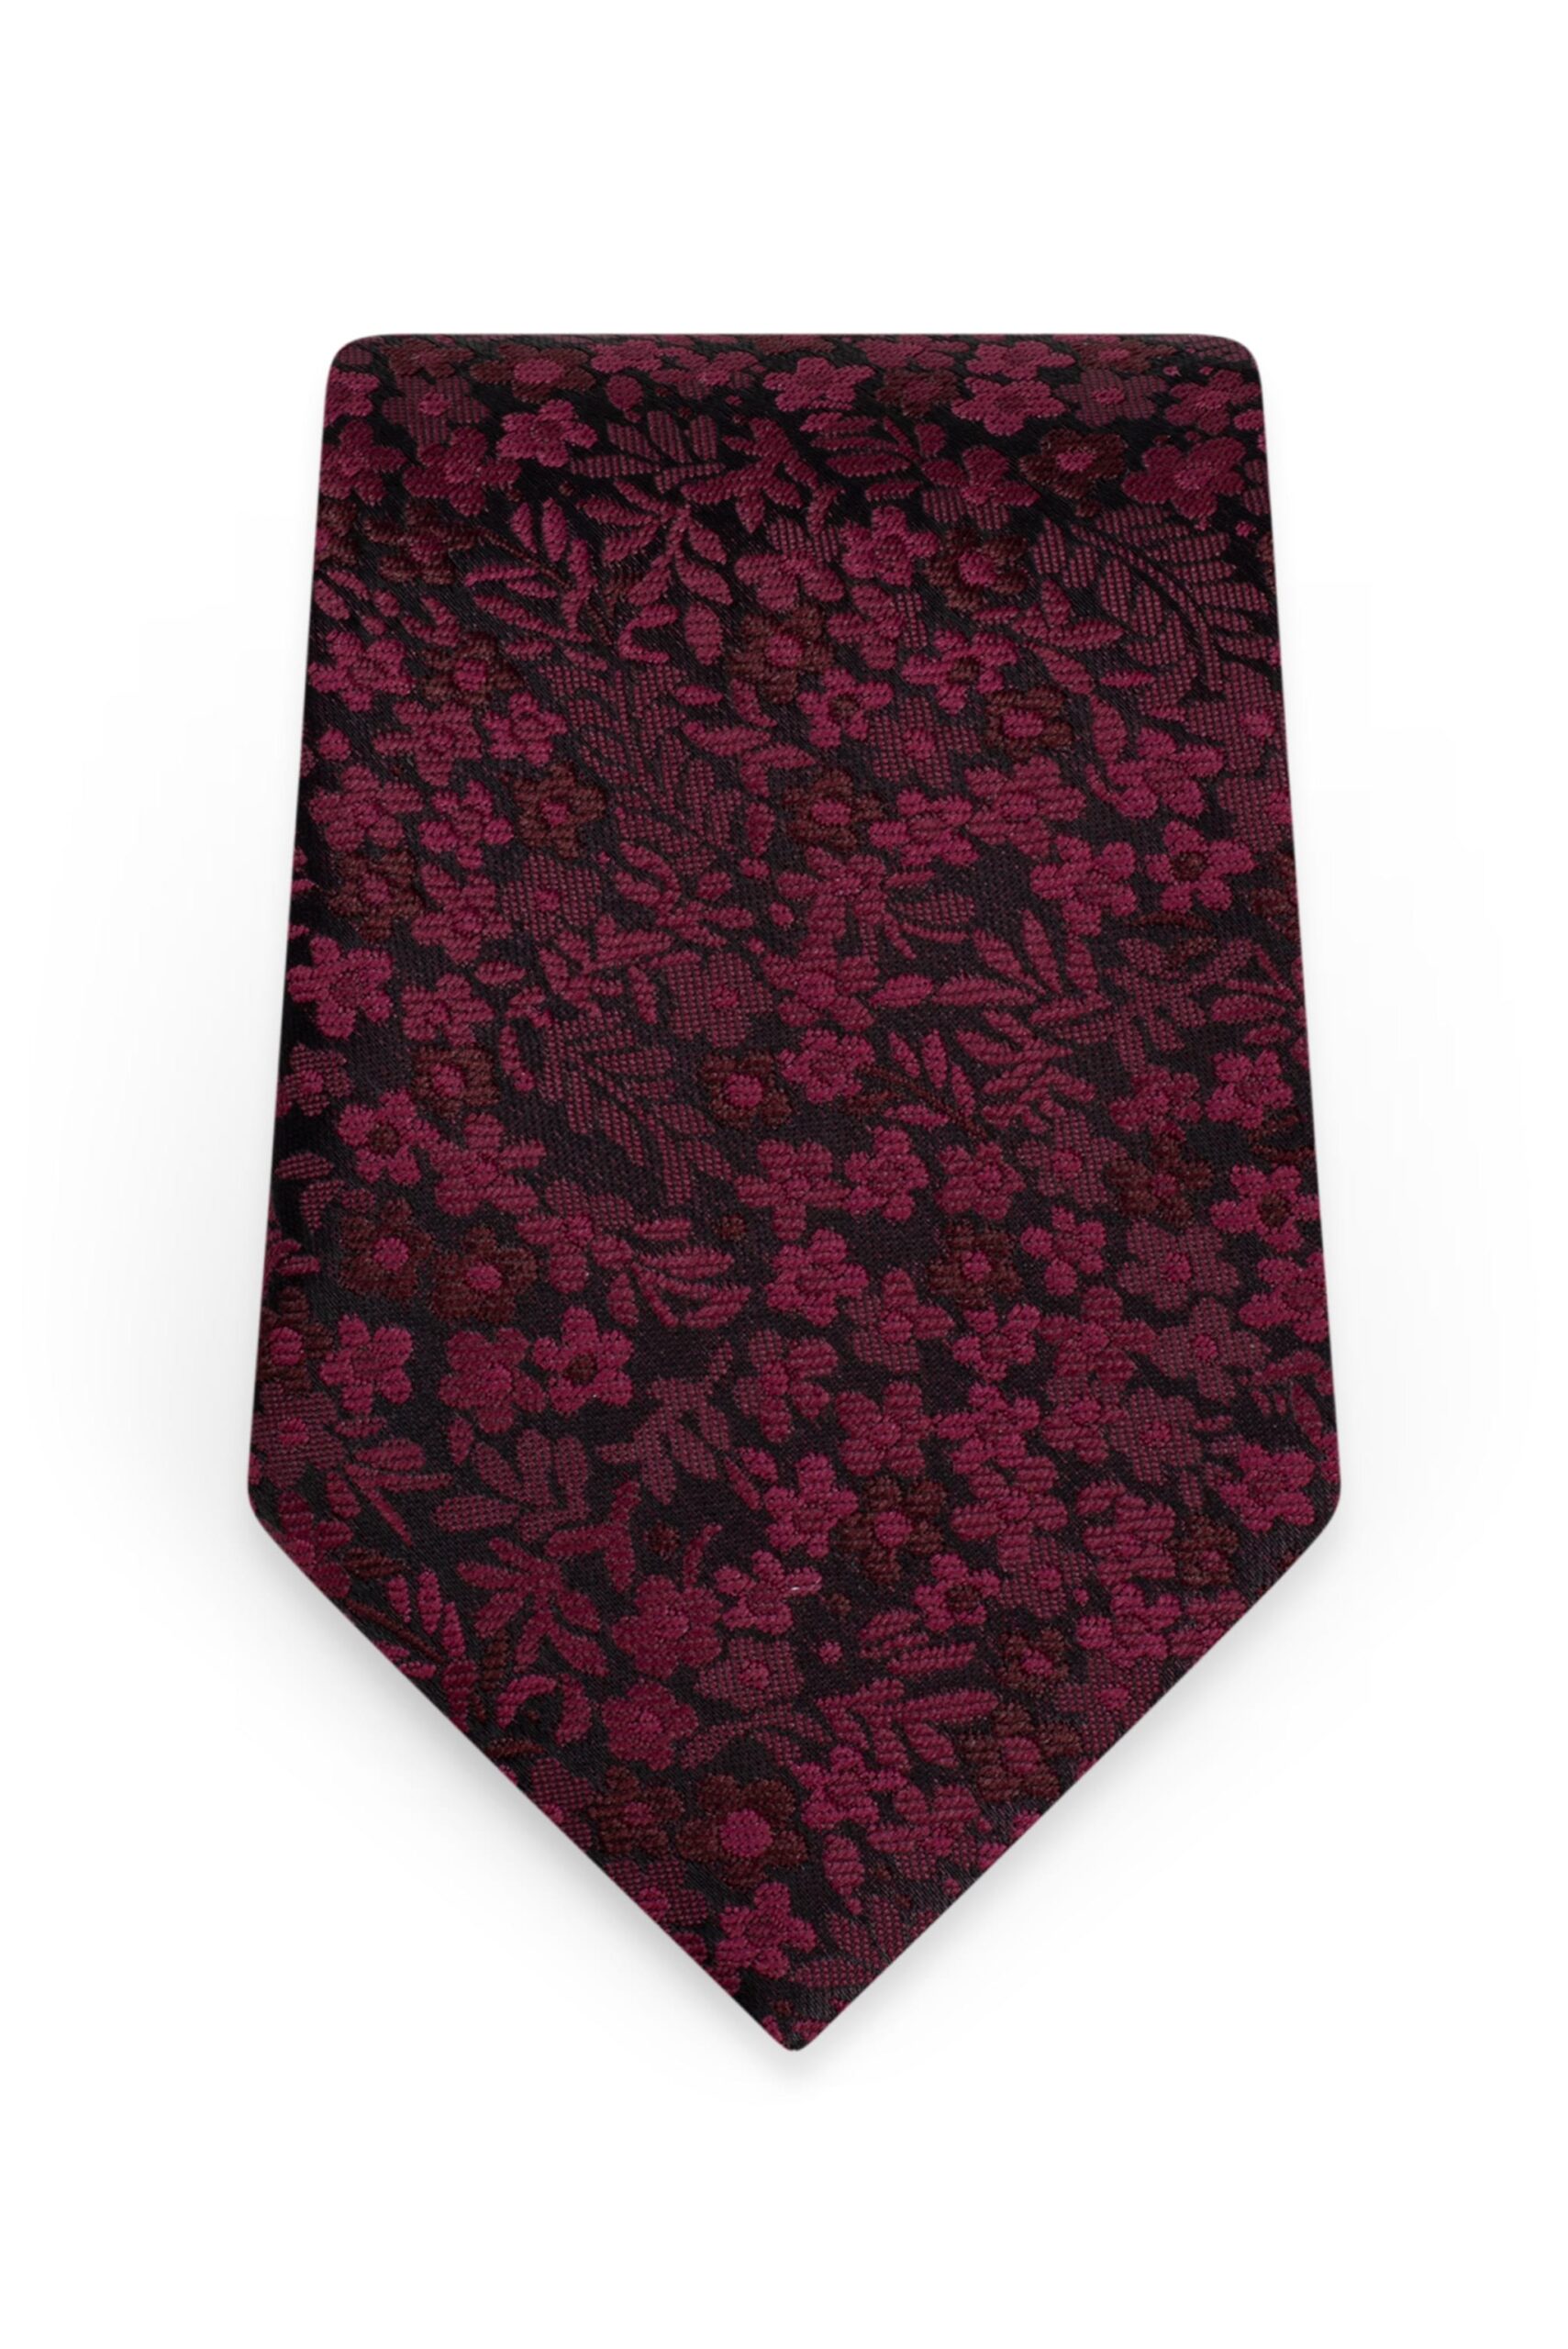 Floral Wine Self-Tie Windsor Tie